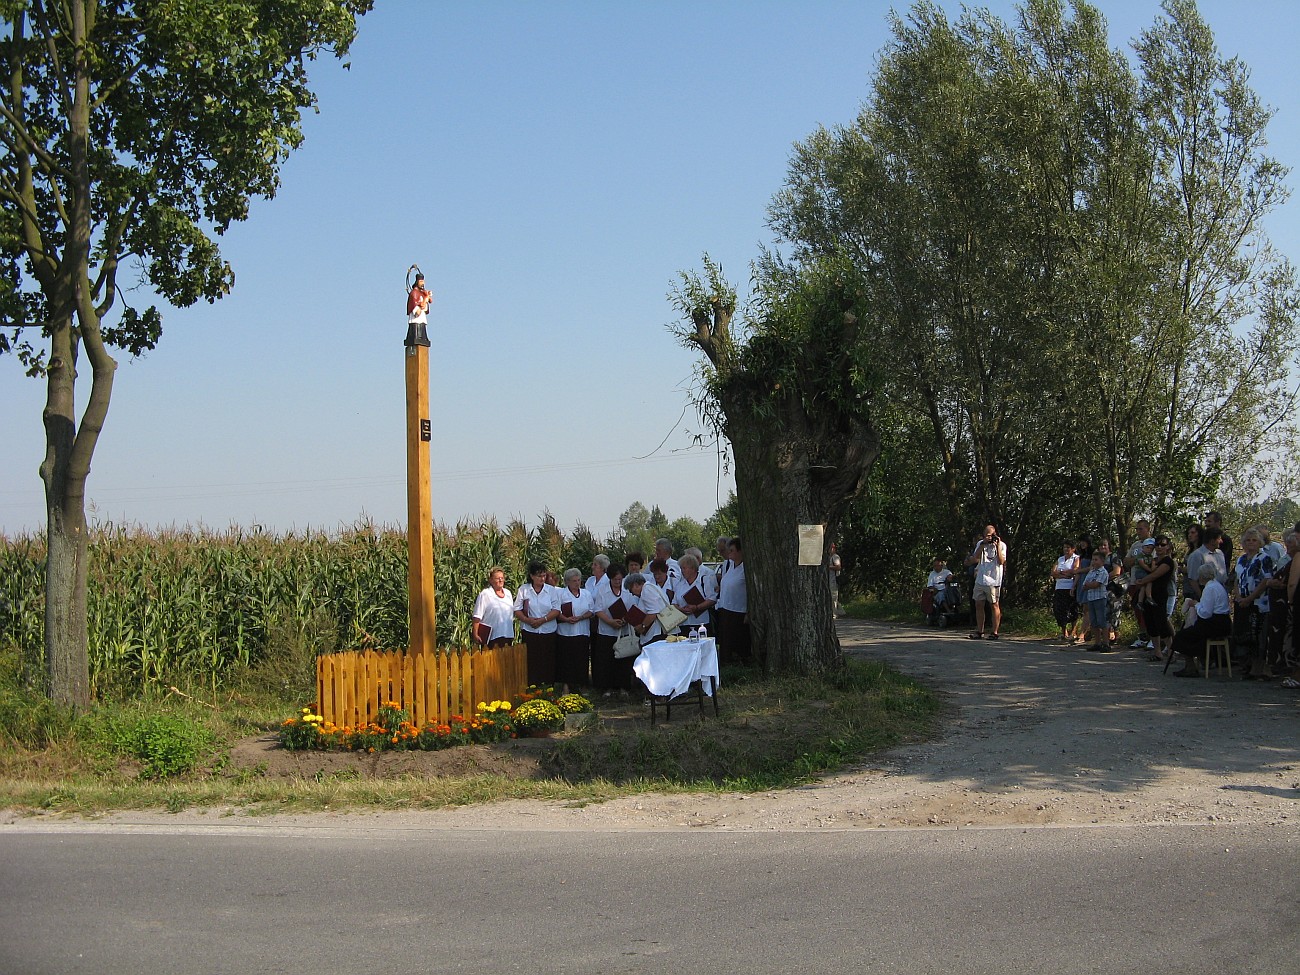 Zgromadzeni przy figurce Jana Nepomucena mieszkańcy Zglenic Duzych i okolic oczekujący na poświęcenie świątka, 27.08.2011 r.